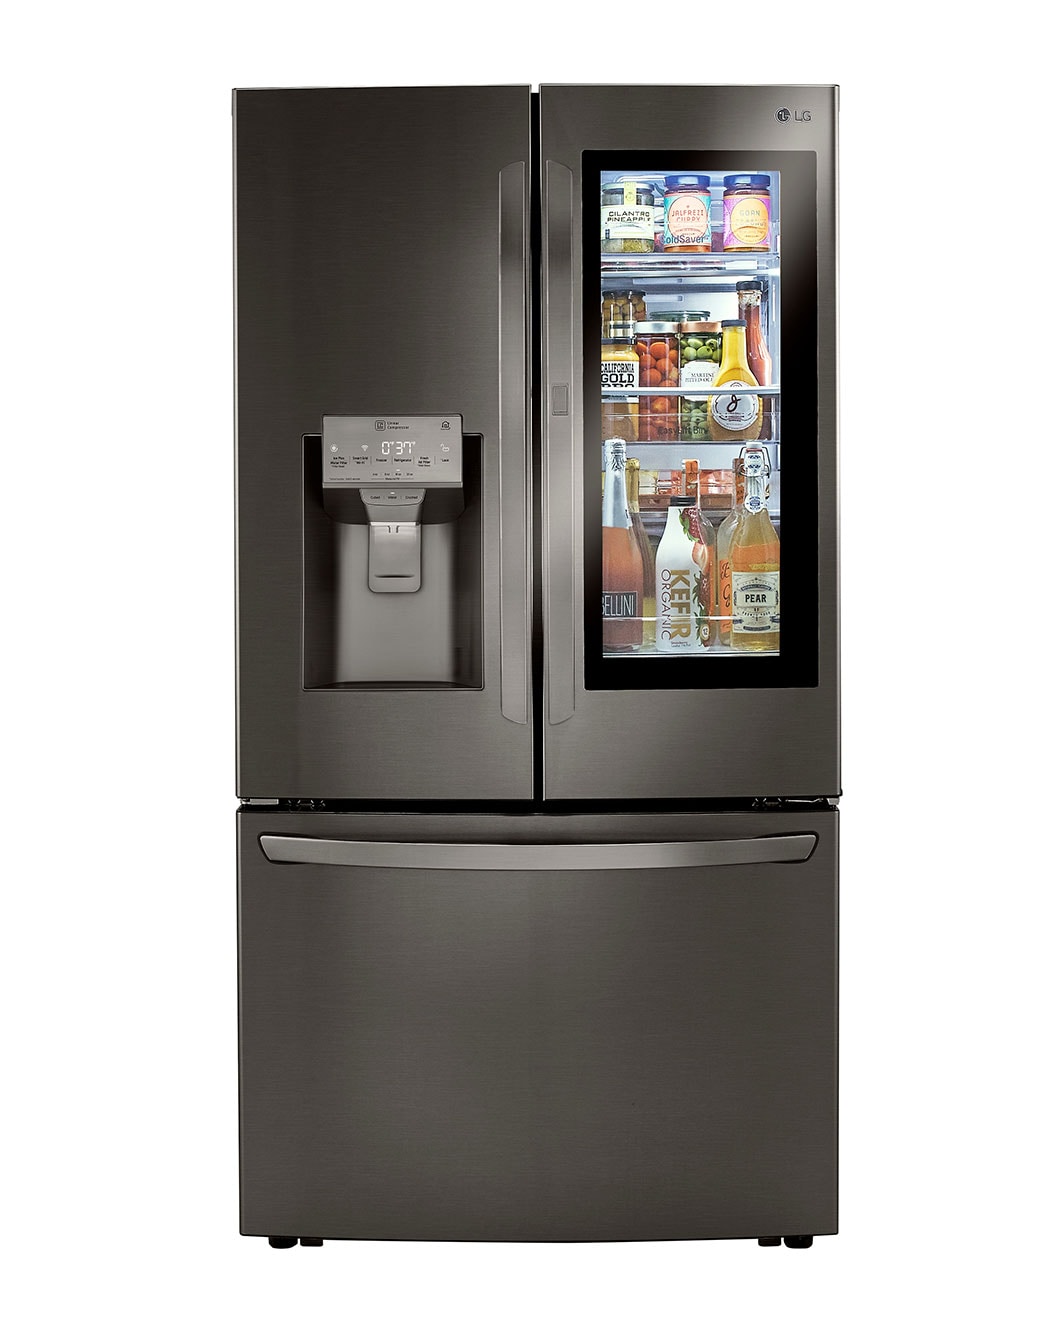 Tipos de refrigeradores para cada espacio – The Home Depot Blog